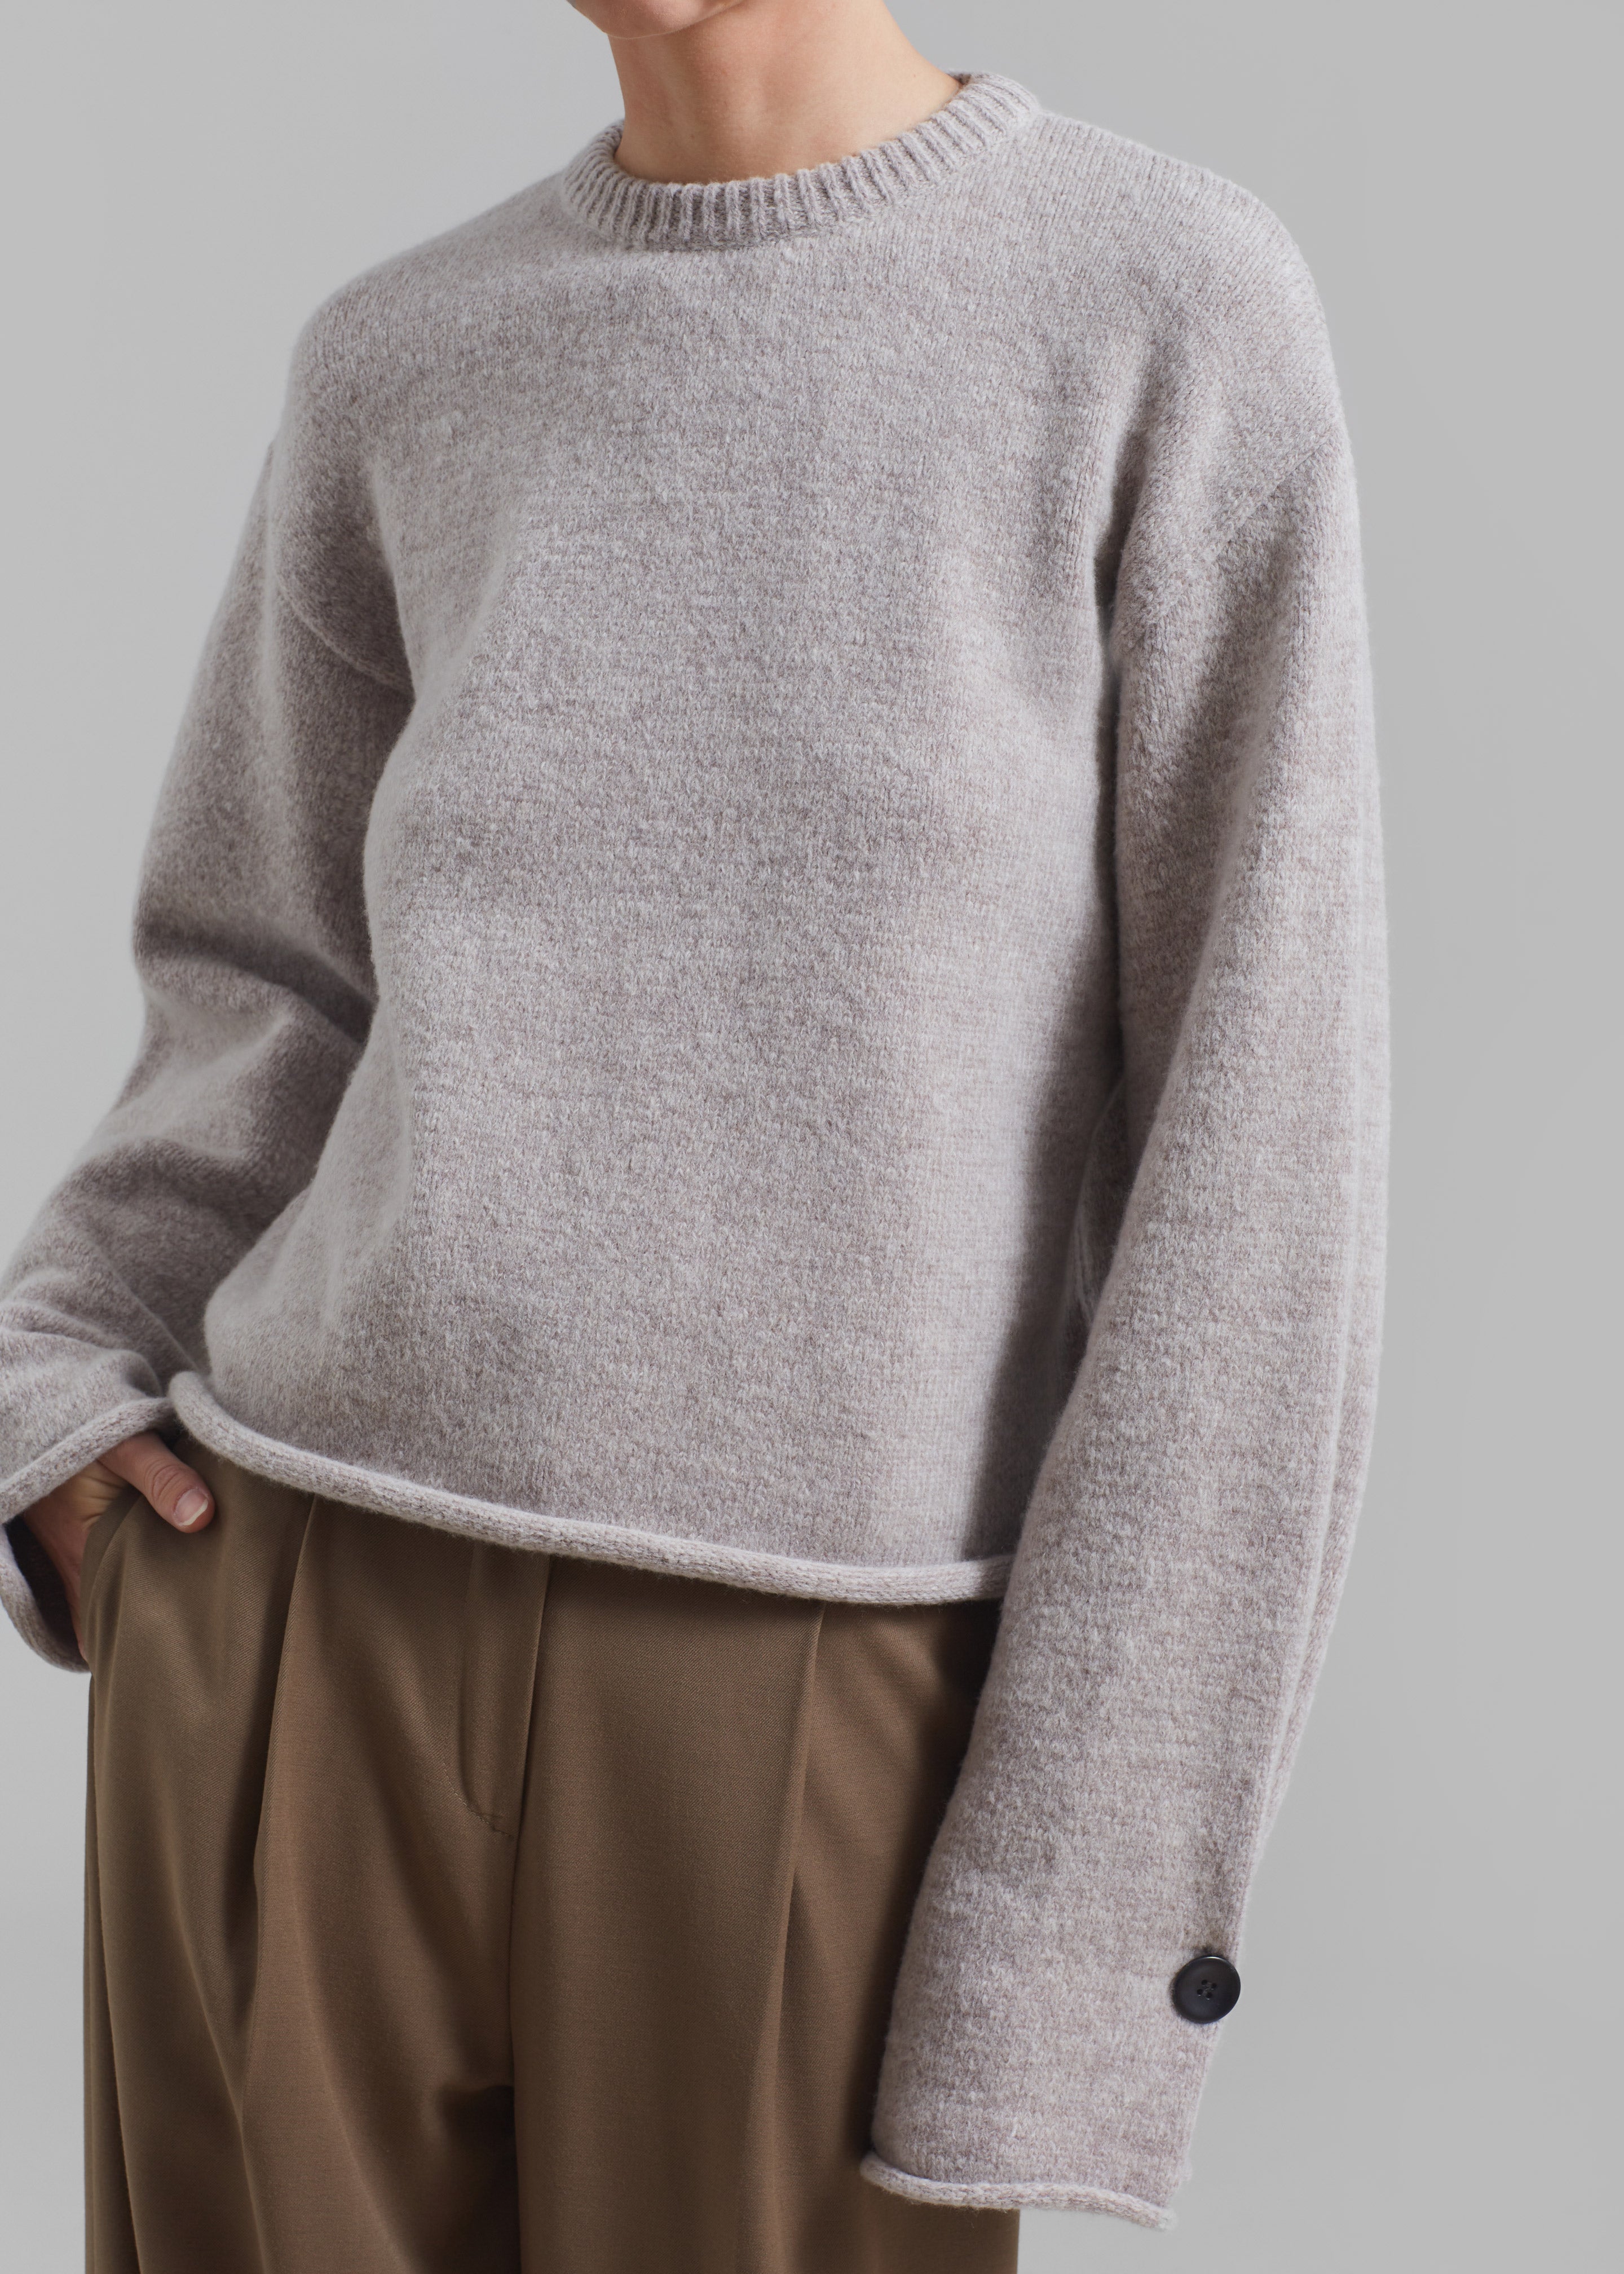 Proenza Schouler White Label Tara Sweater - Fig - 2